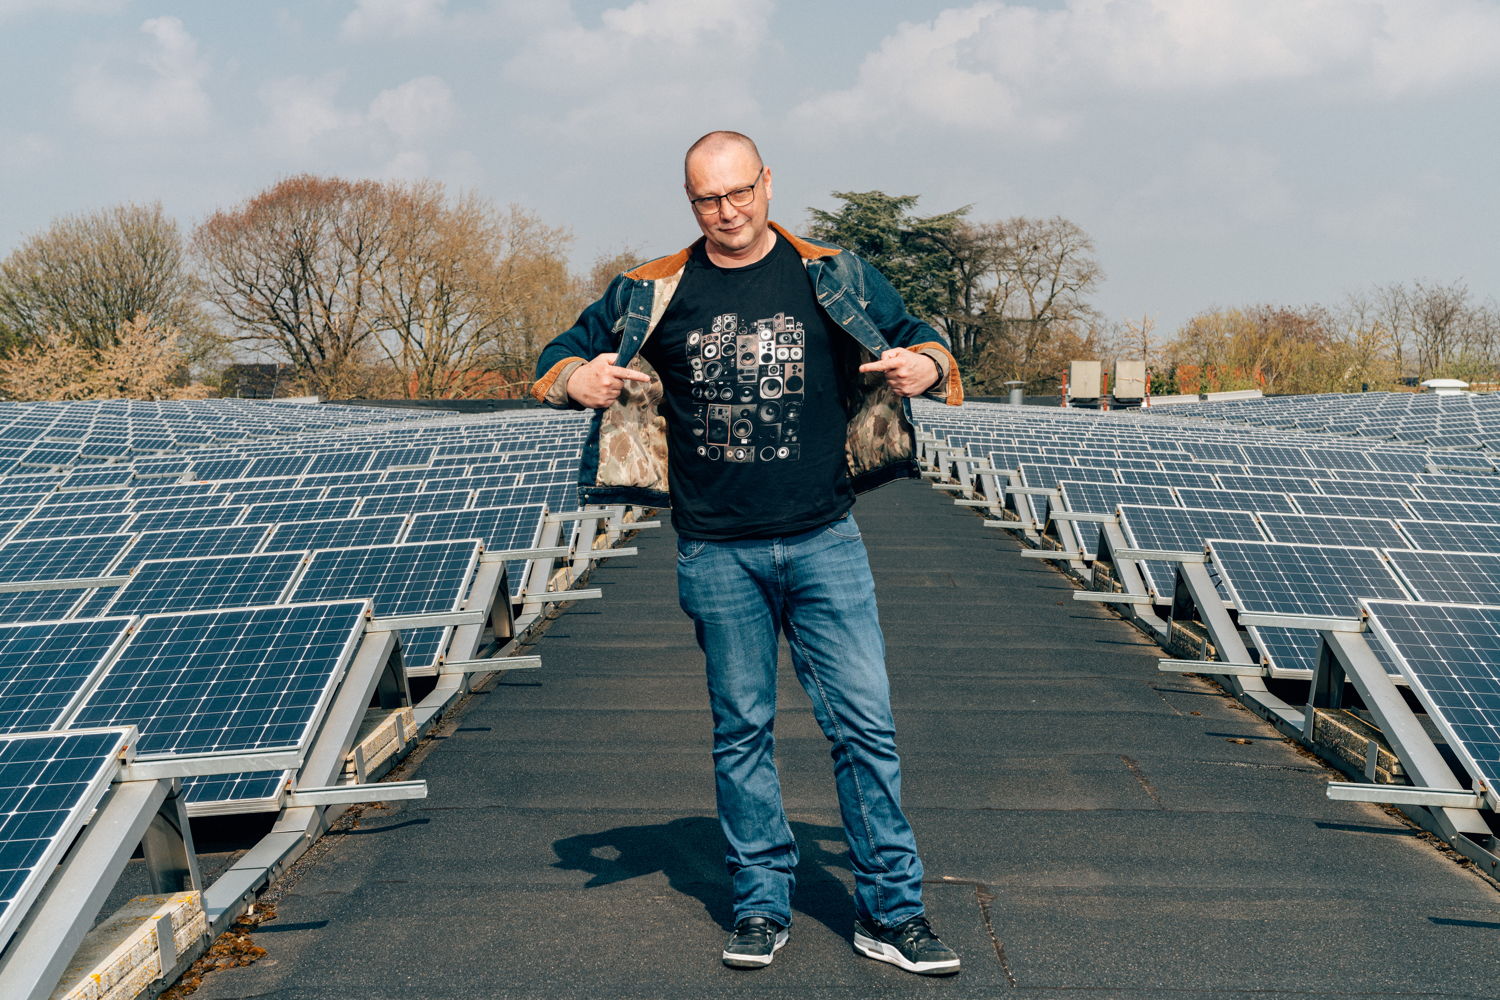 Peter Colpaert (Herent) devant son installation de panneaux solaires. © Illias Teirlinck